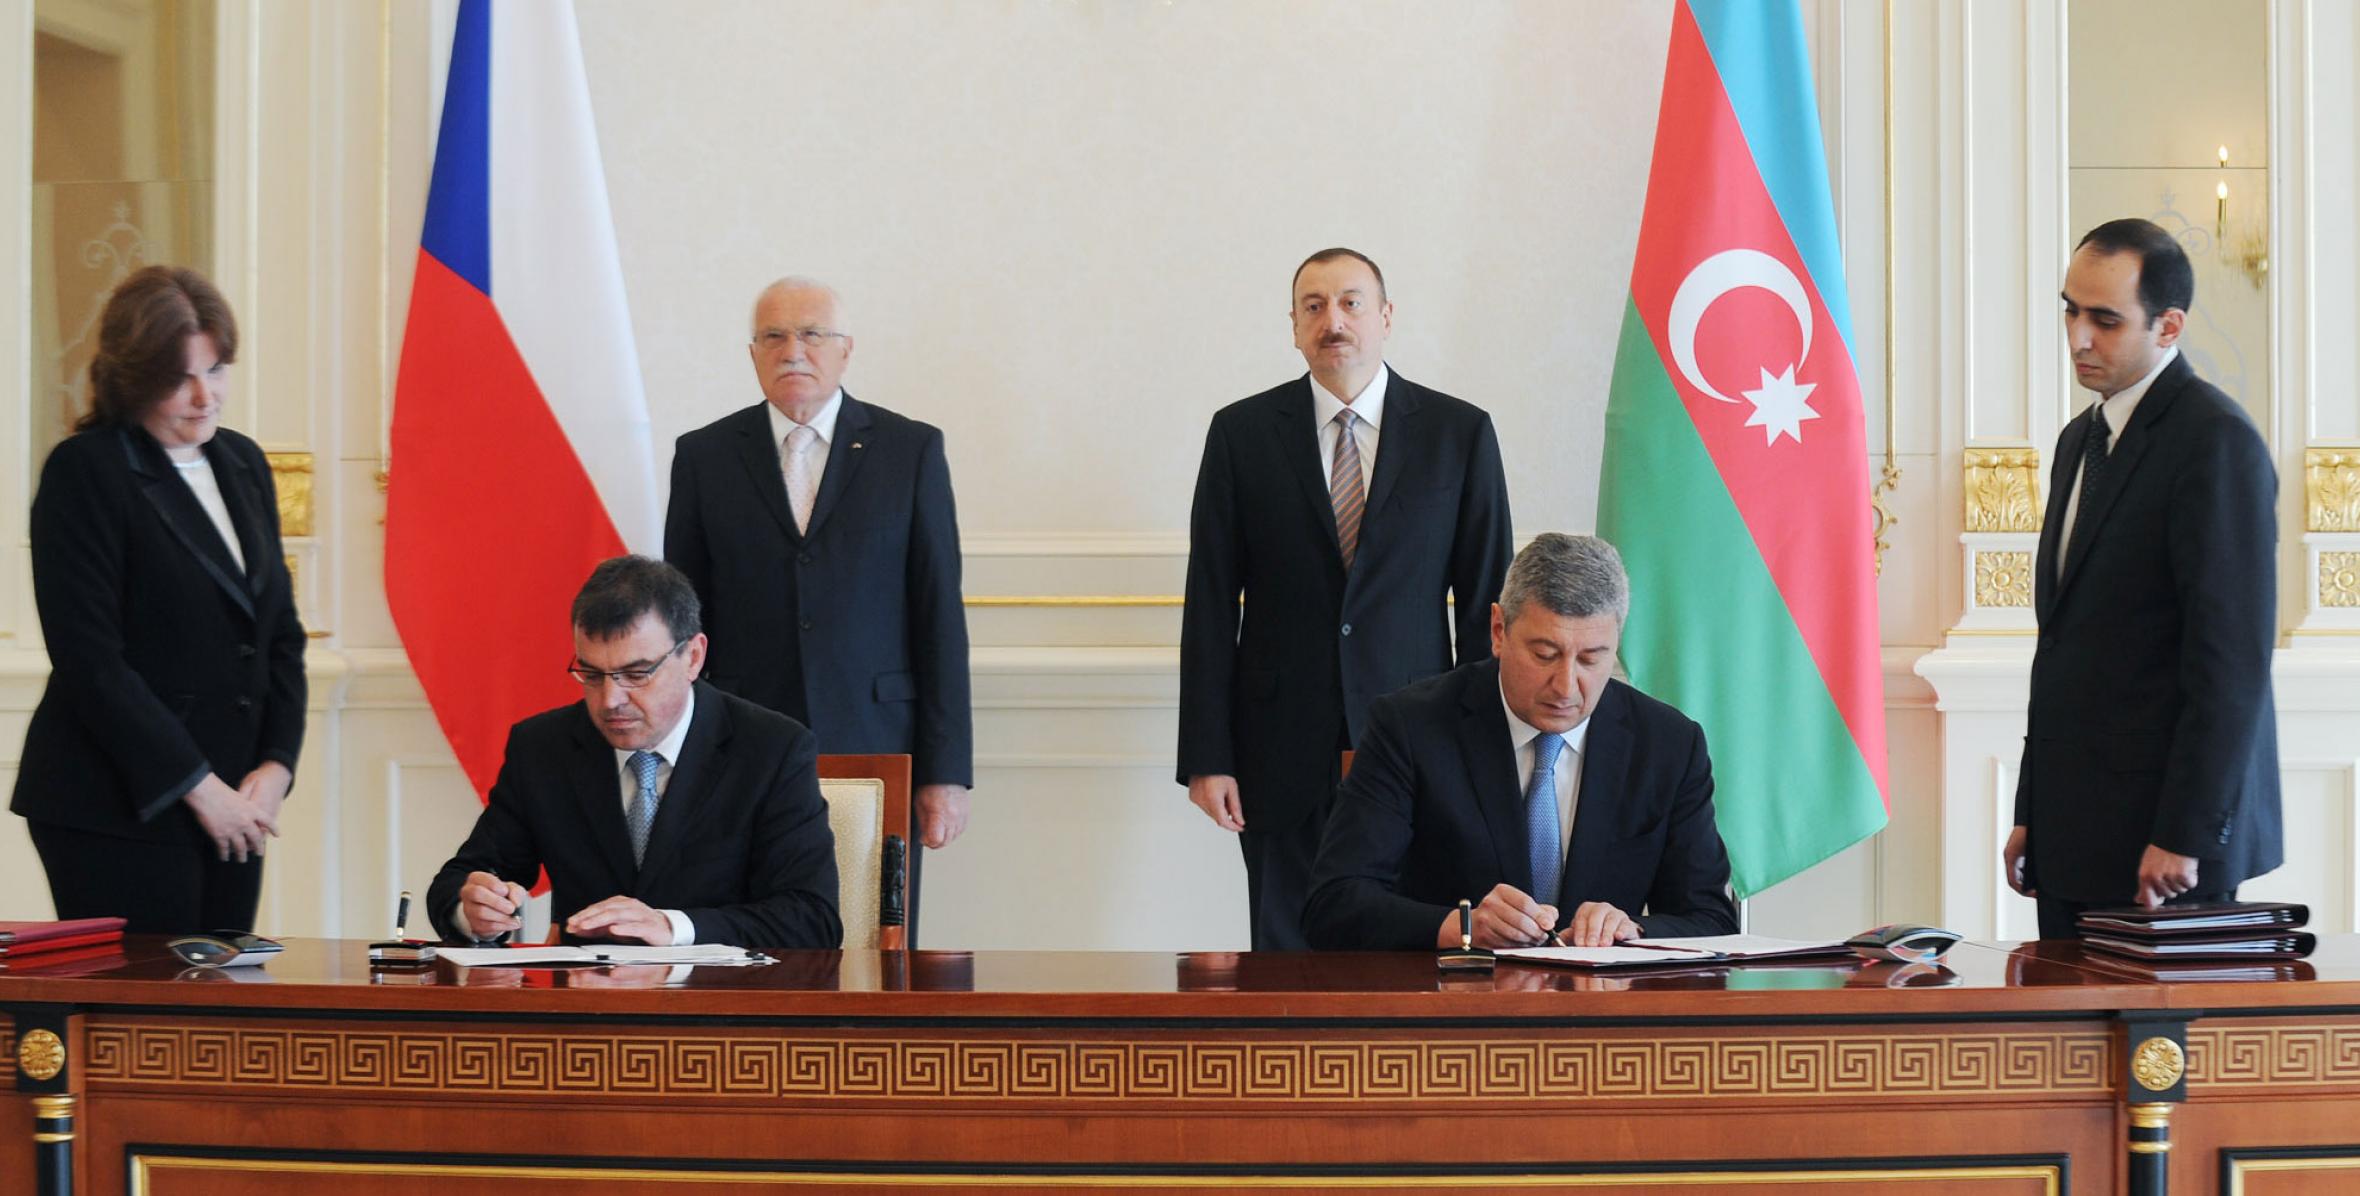 Состоялась церемония подписания азербайджано-чешских документов